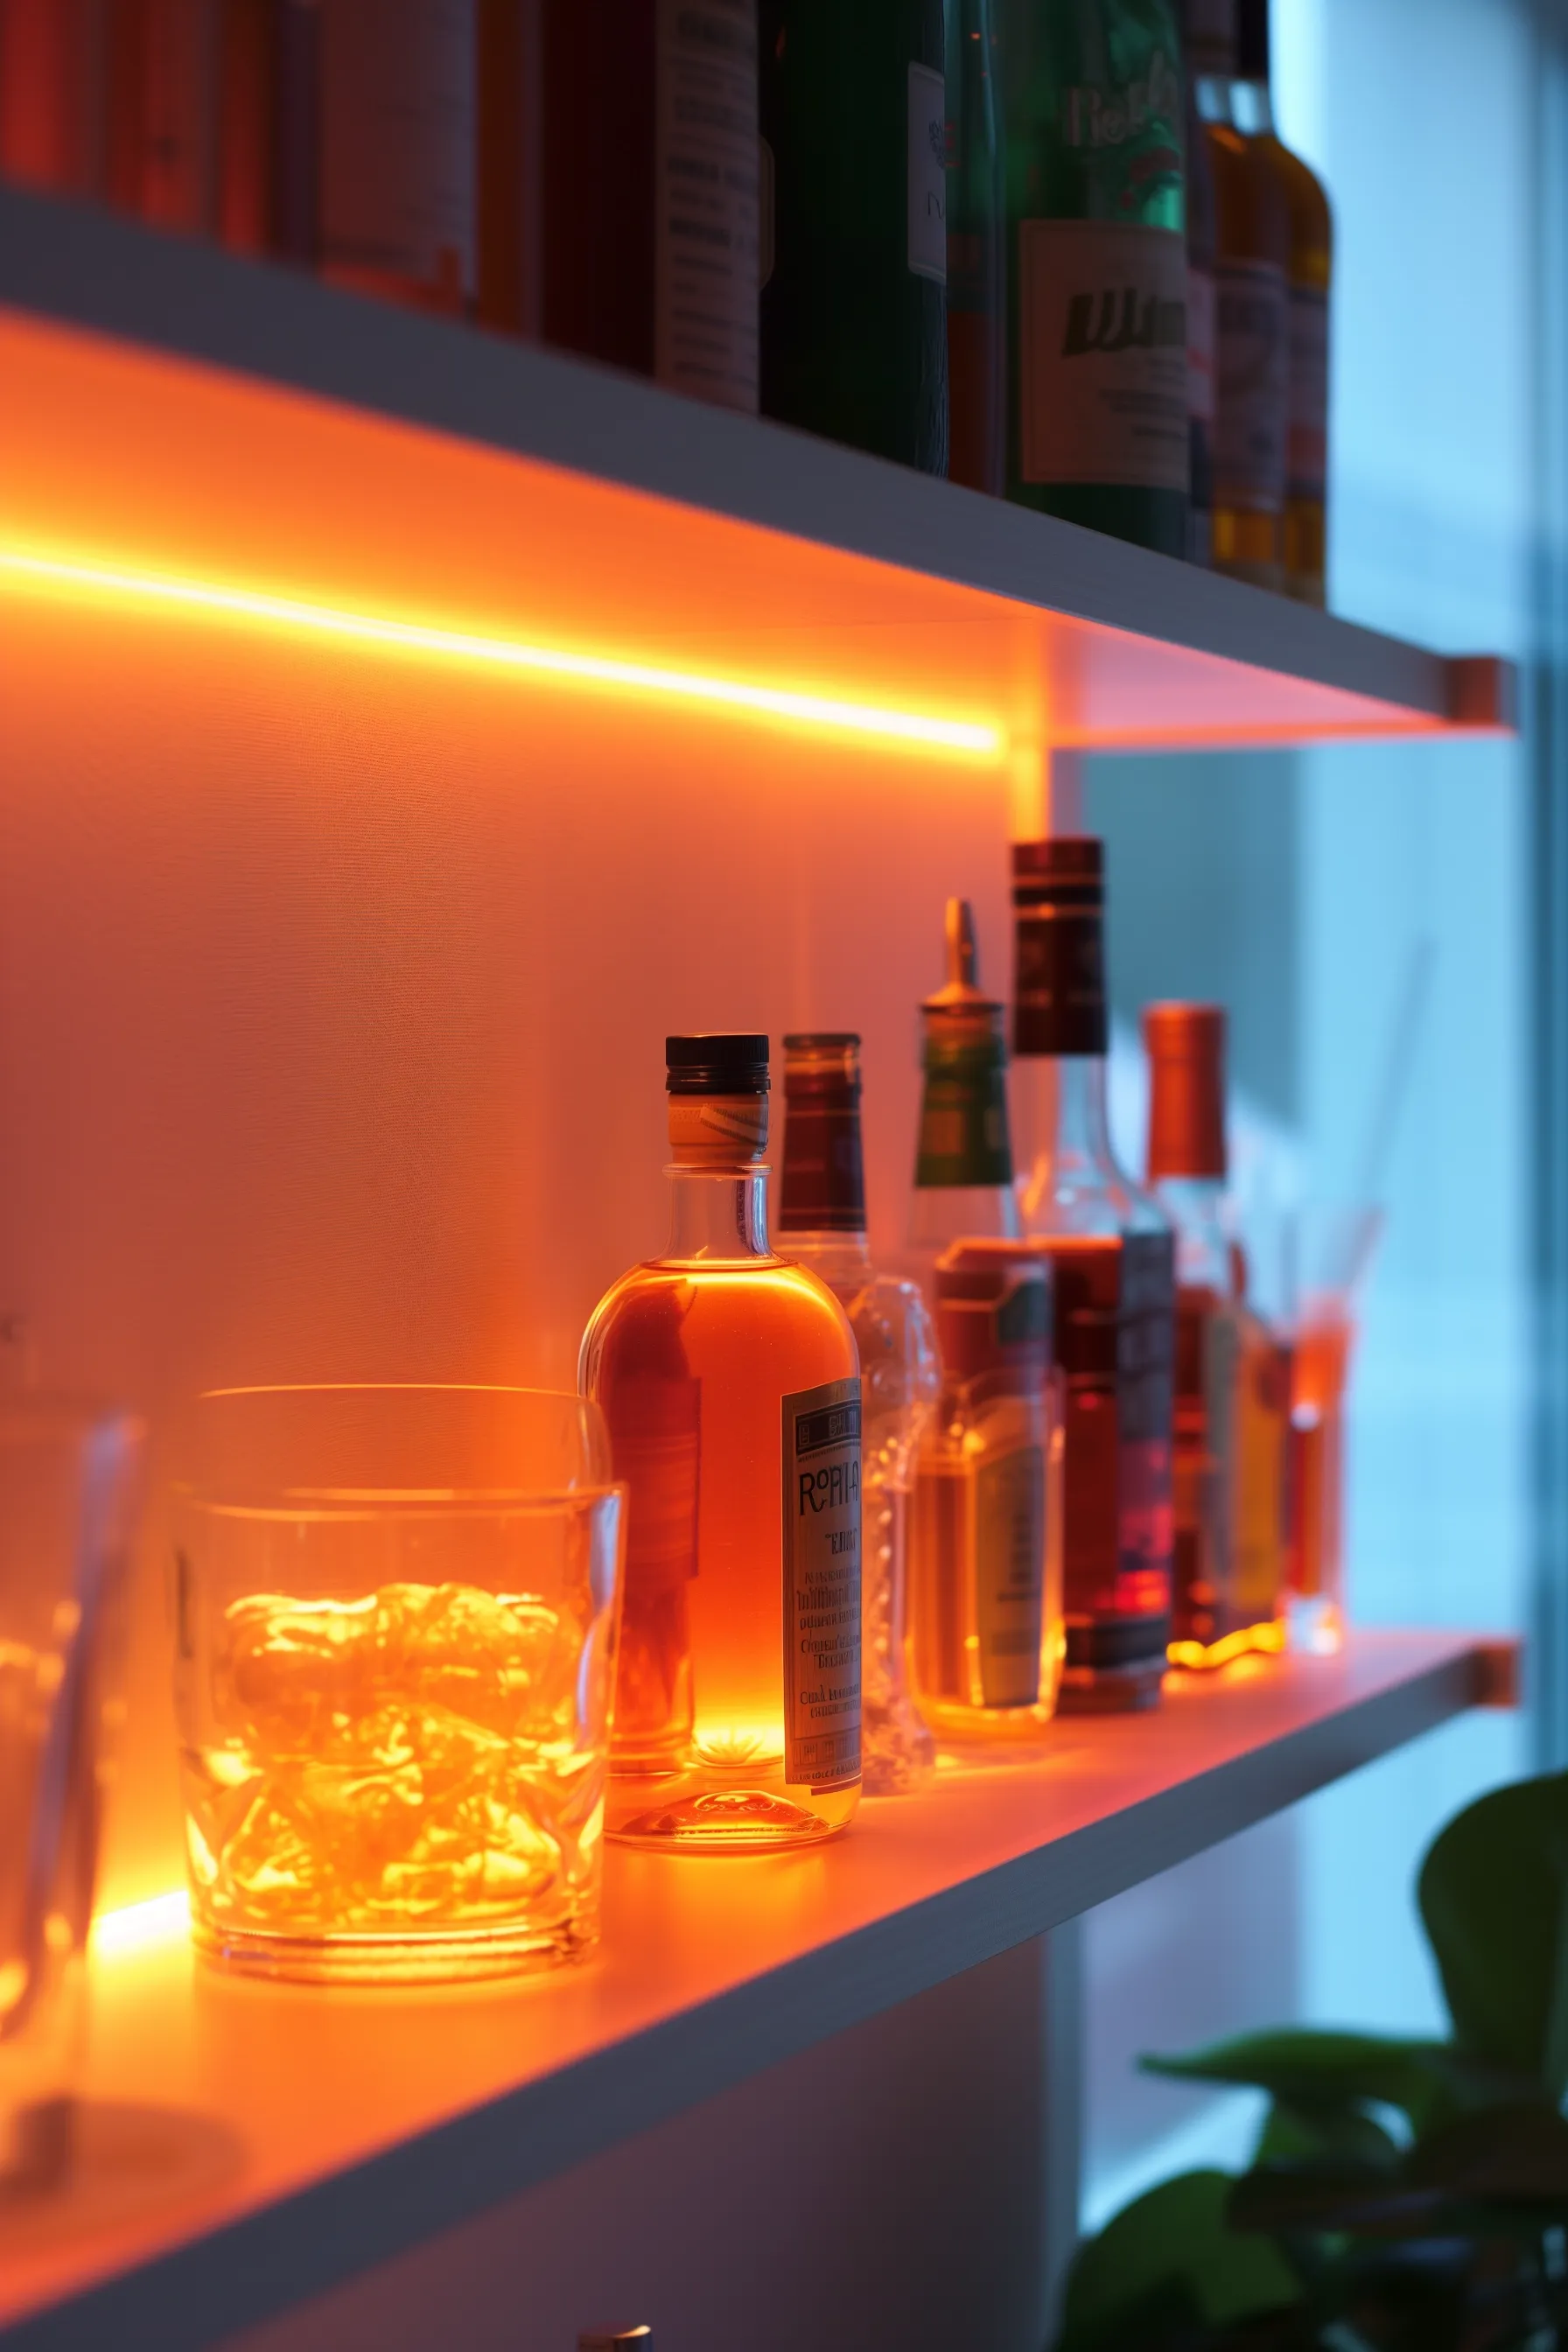 Illuminated LED bar shelves